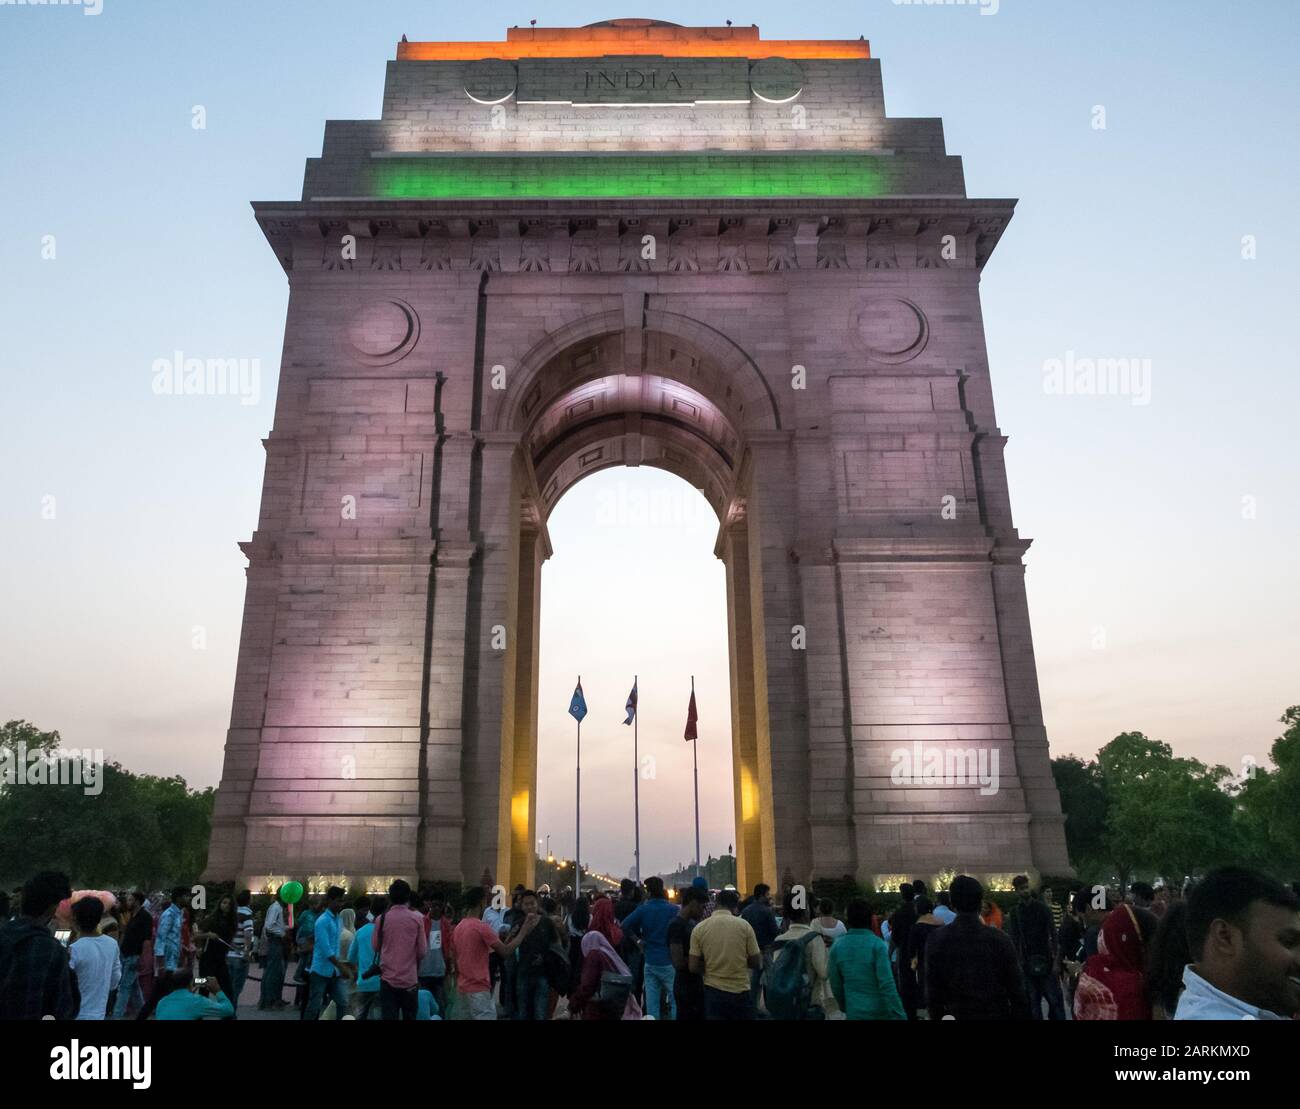 New DELHI, DELHI/INDIA SETTENTRIONALE-29 MARZO 2018: Porta dell'India, circondata da turisti visti dal basso e illuminati dopo il tramonto. Foto Stock